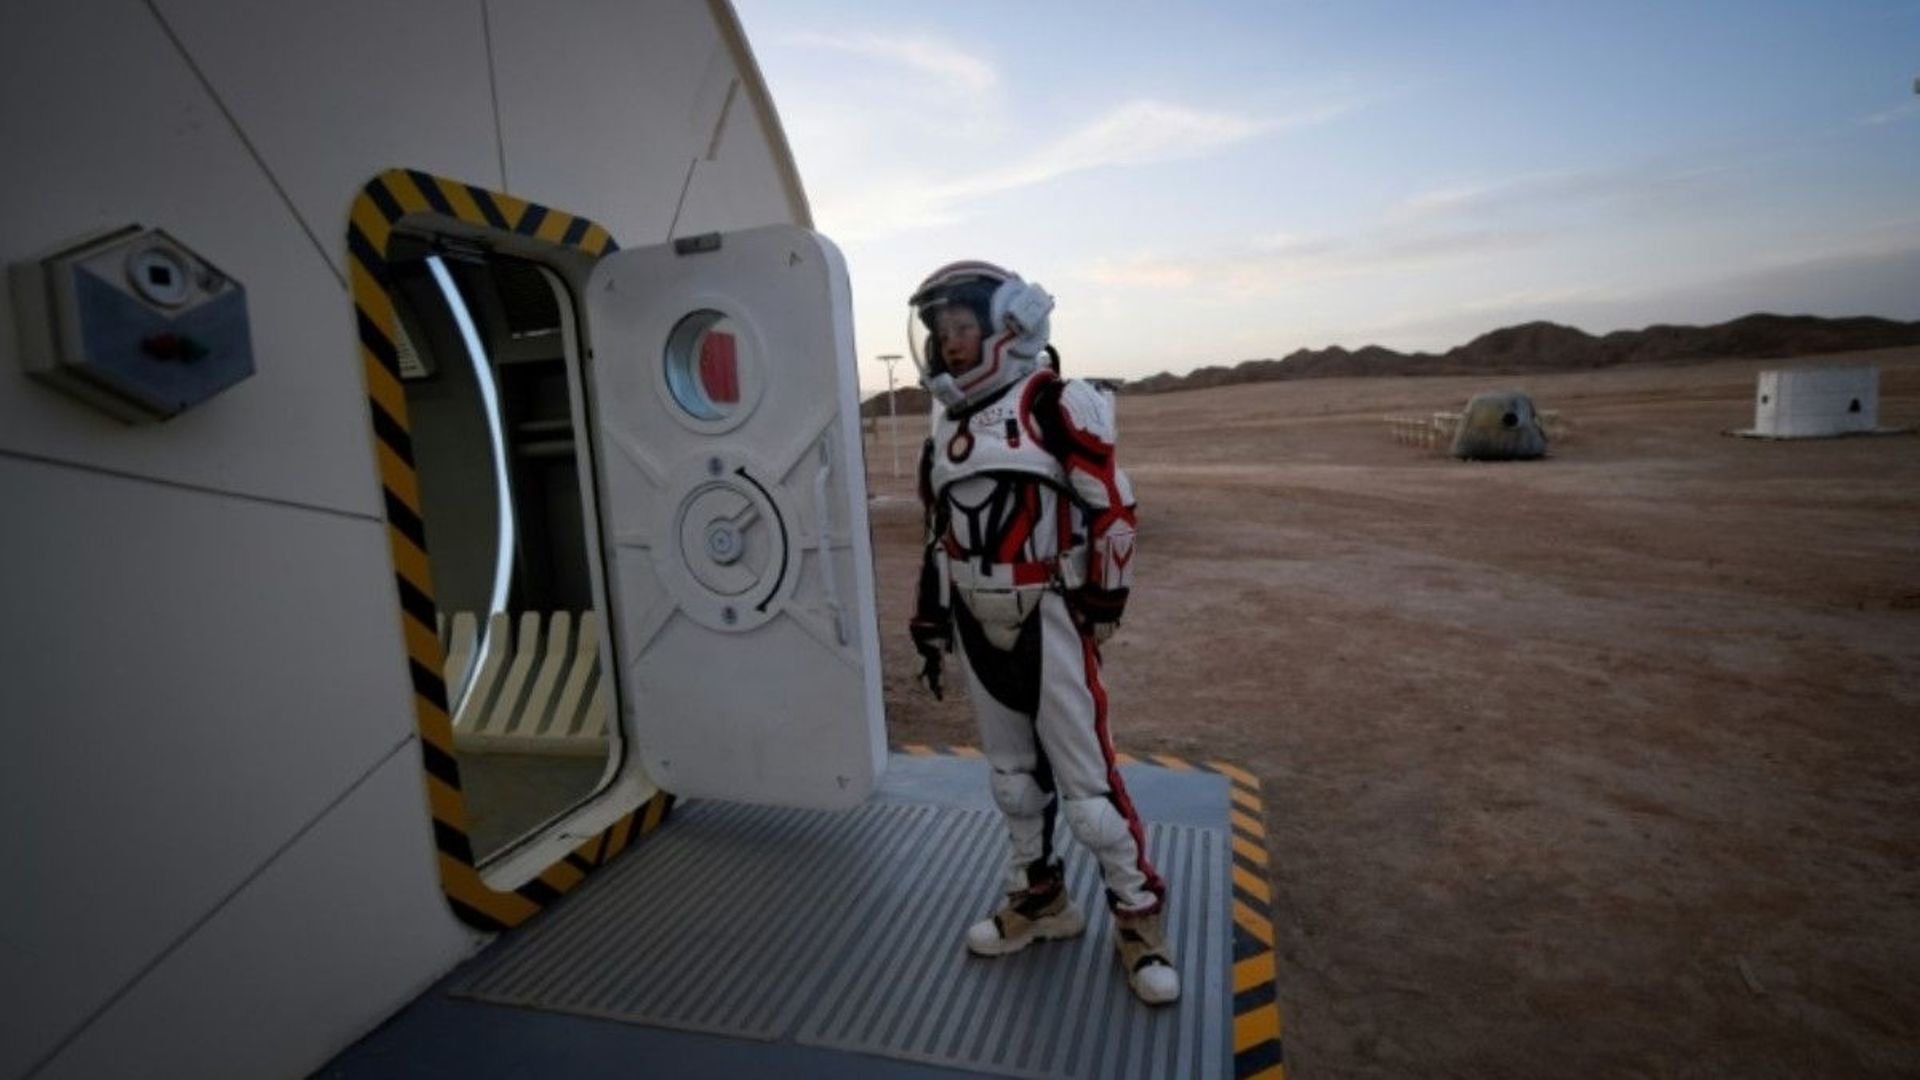 Une femme en combinaison spatiale, le 17 avril 2019, à "Mars Base 1", site d'attractions ouvert au public dans le désert de Gobi, en Chine.